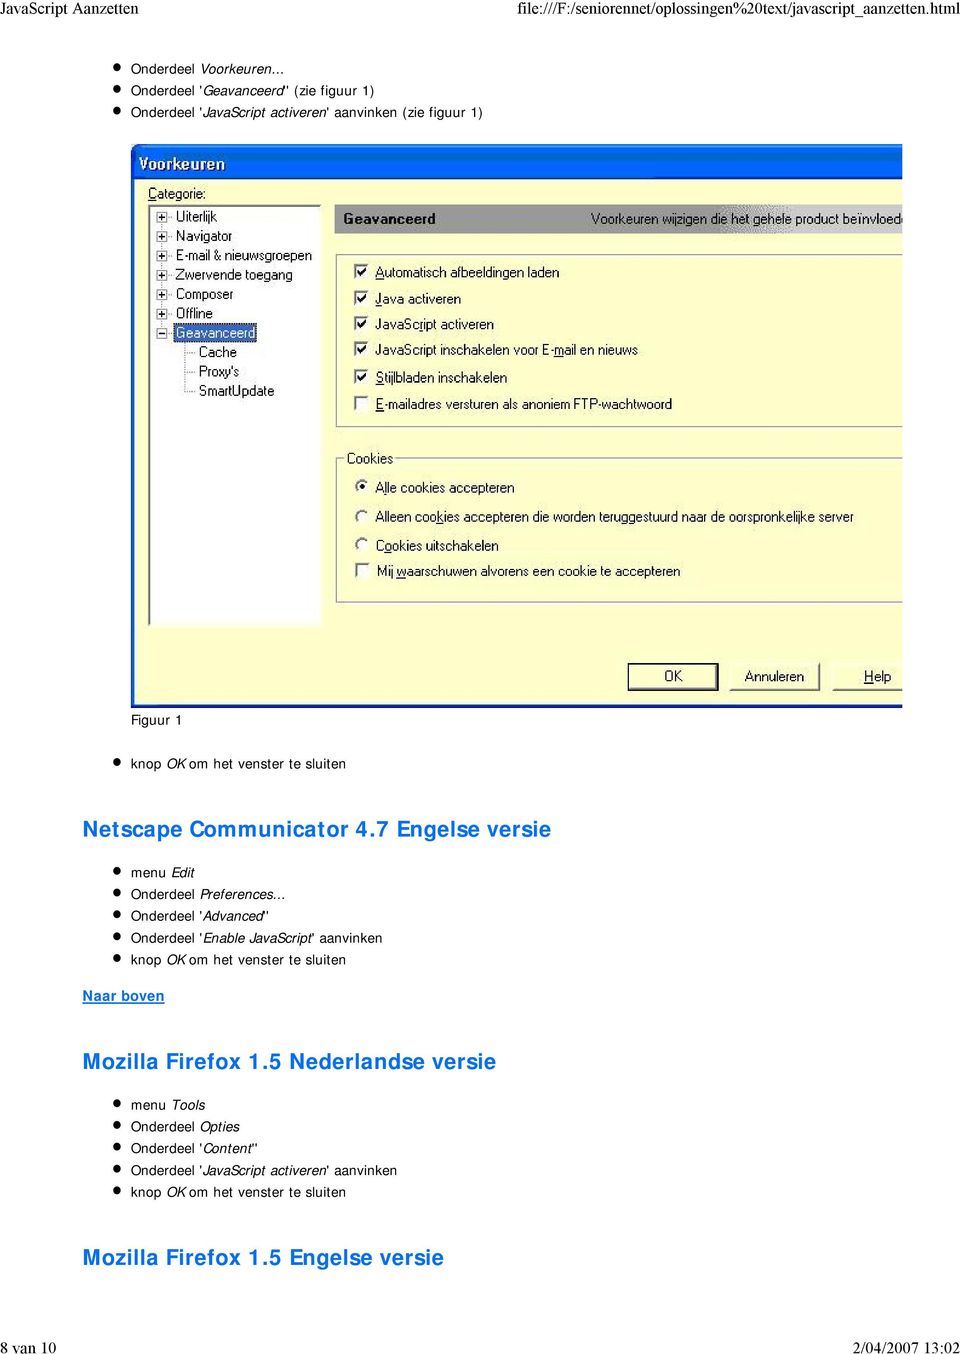 Netscape Communicator 4.7 Engelse versie menu Edit Onderdeel Preferences.